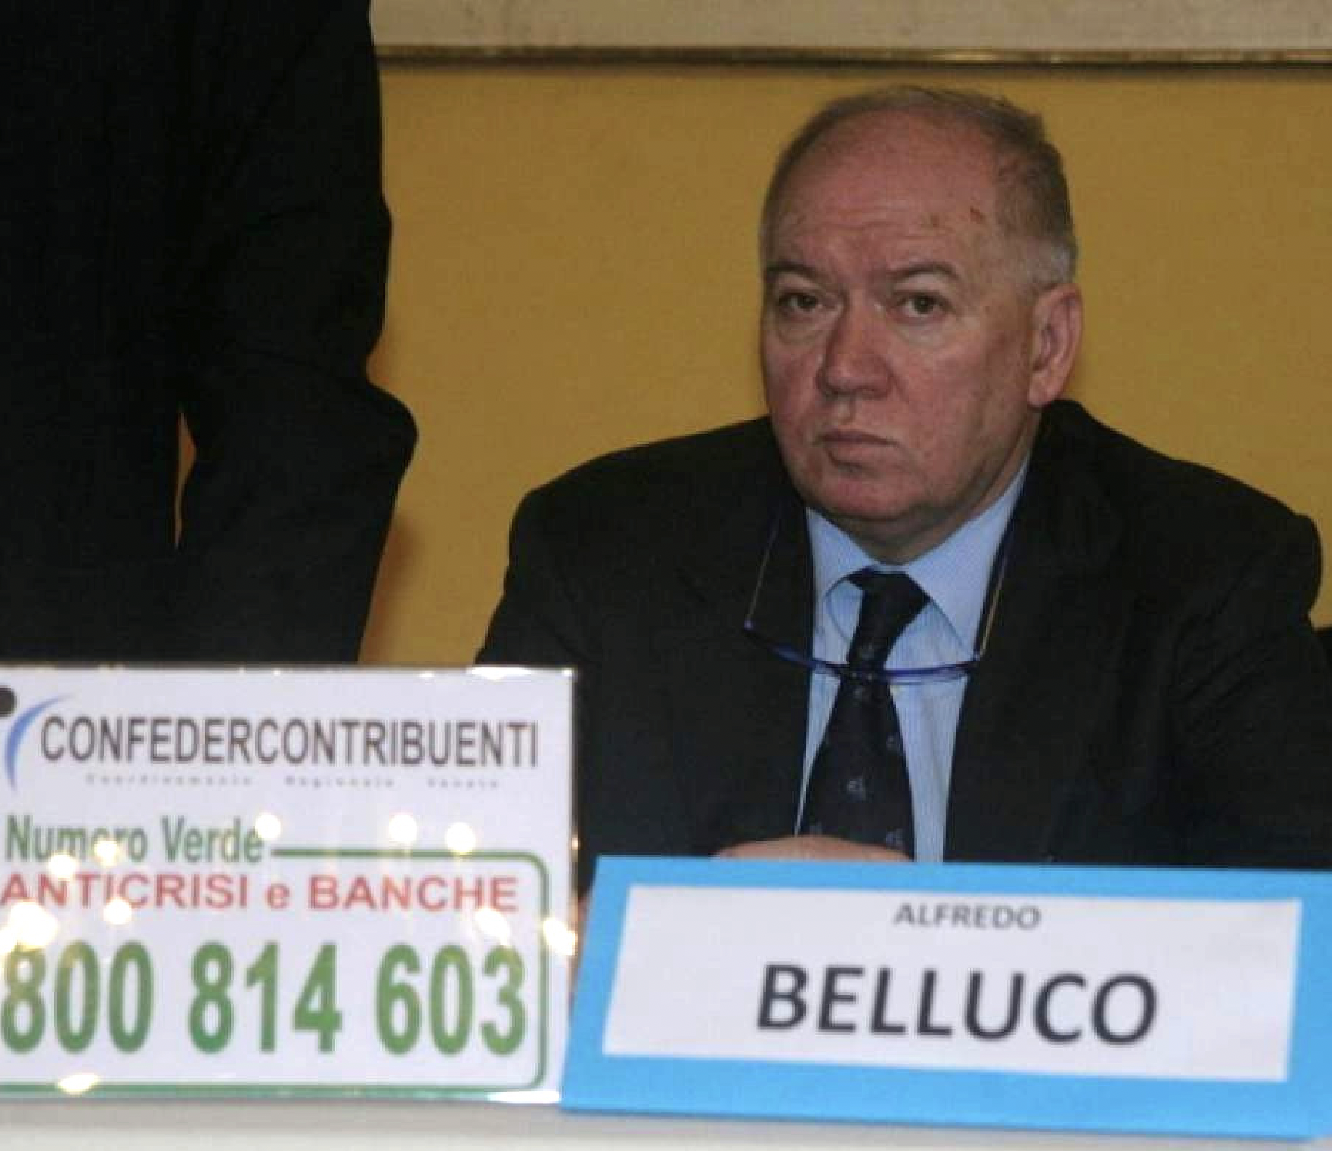 Alfredo Belluco contro Decreto Ingiuntivo Veloce a prima firma Andrea Ostellari (Lega)